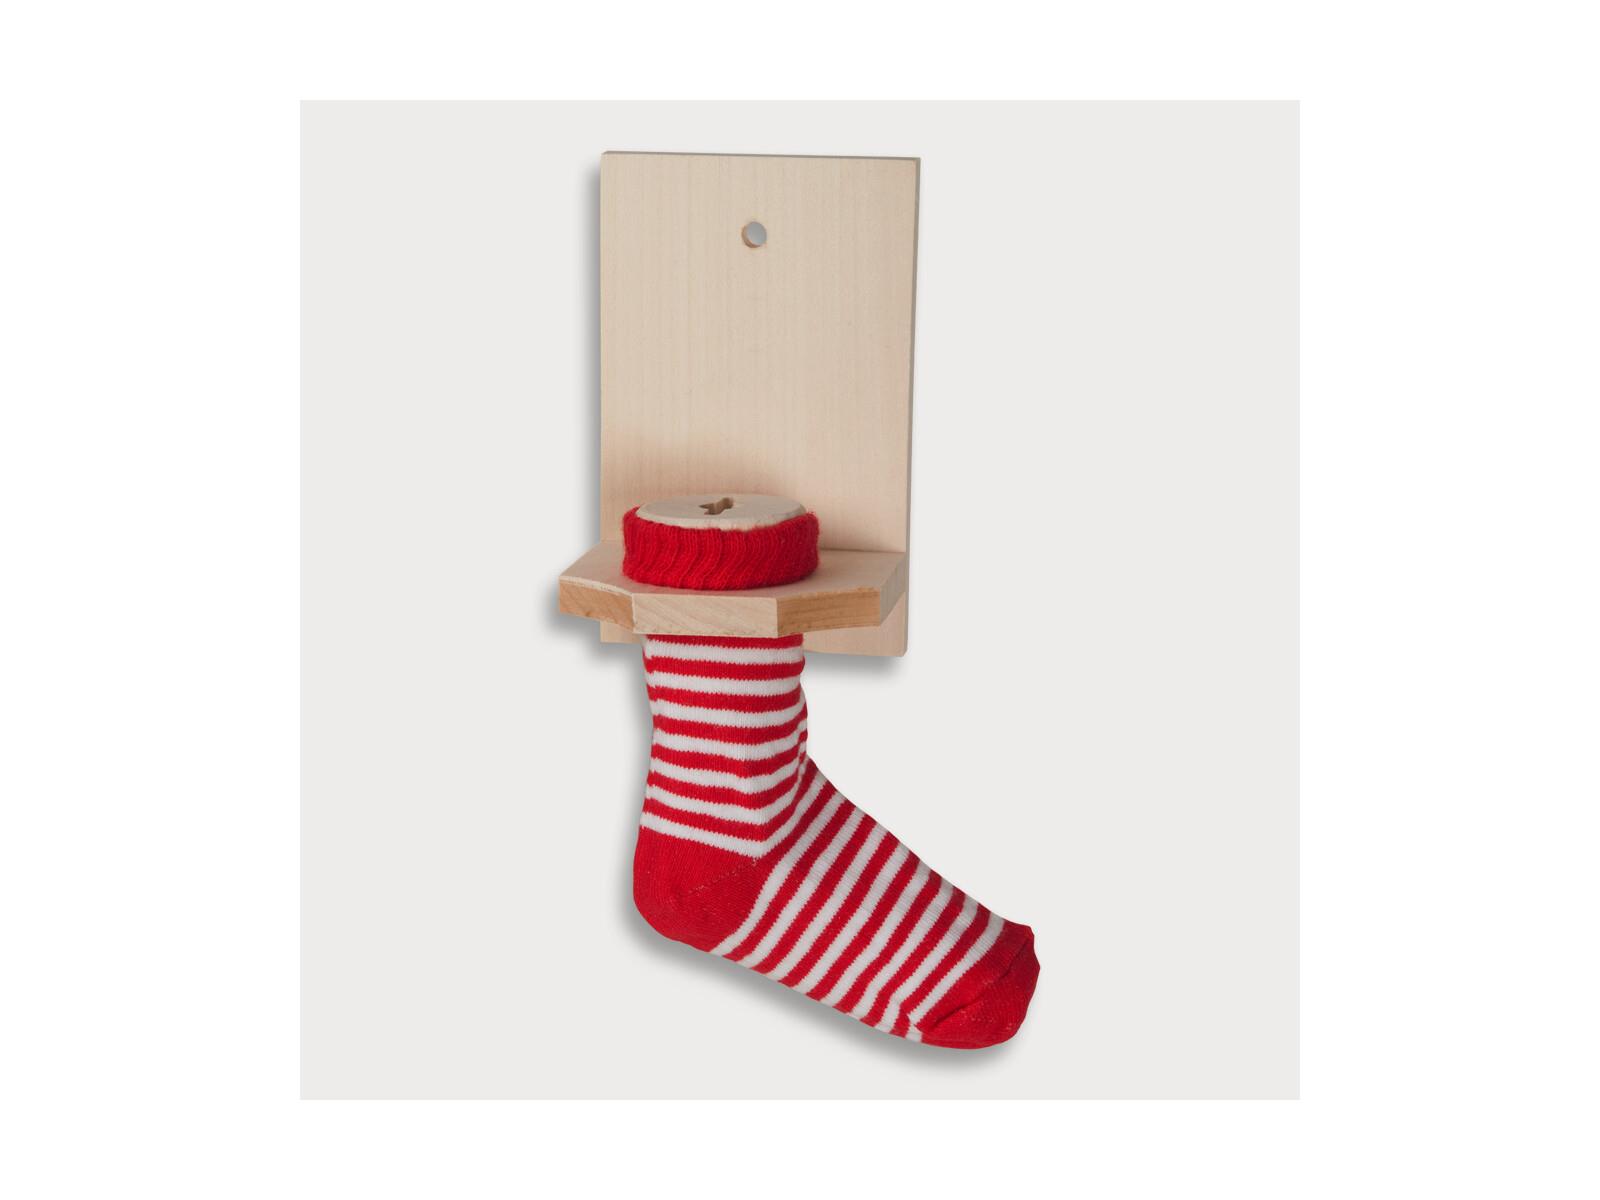 Sparstrumpf, rote Socke aus Holz 12 cm